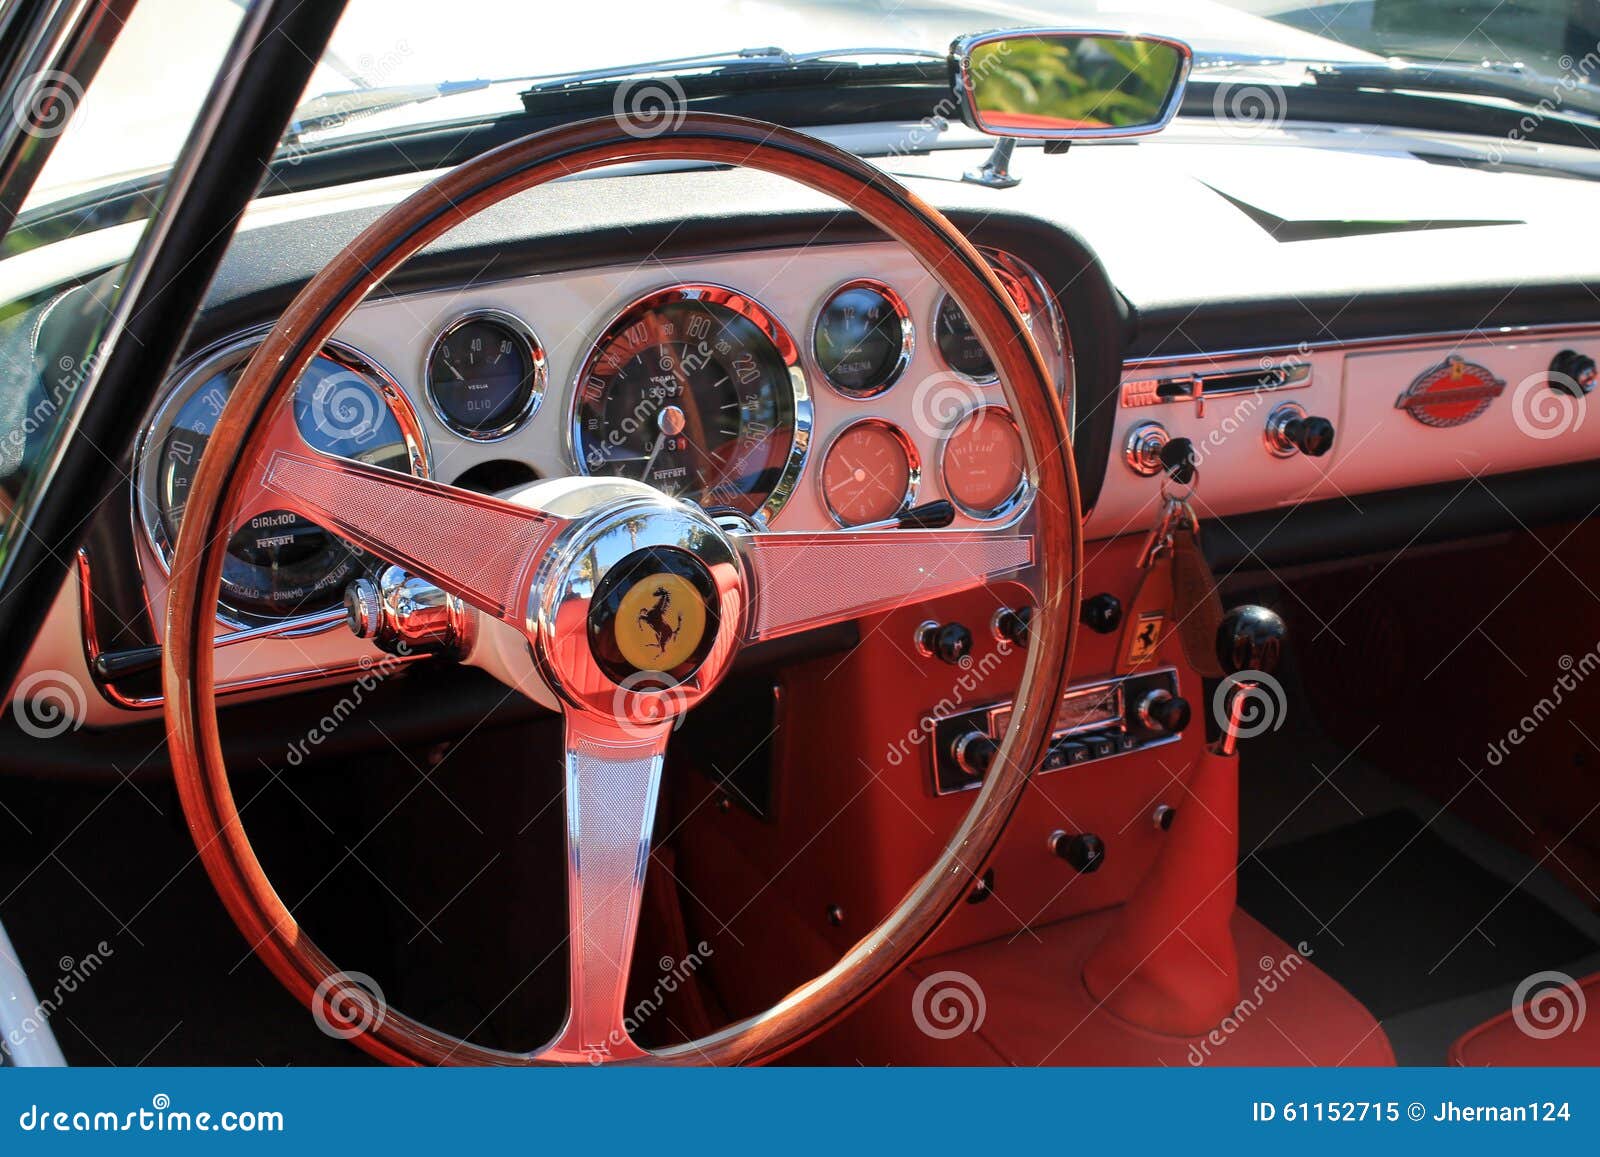 Classic Luxury Ferrari Interior Editorial Image Image Of